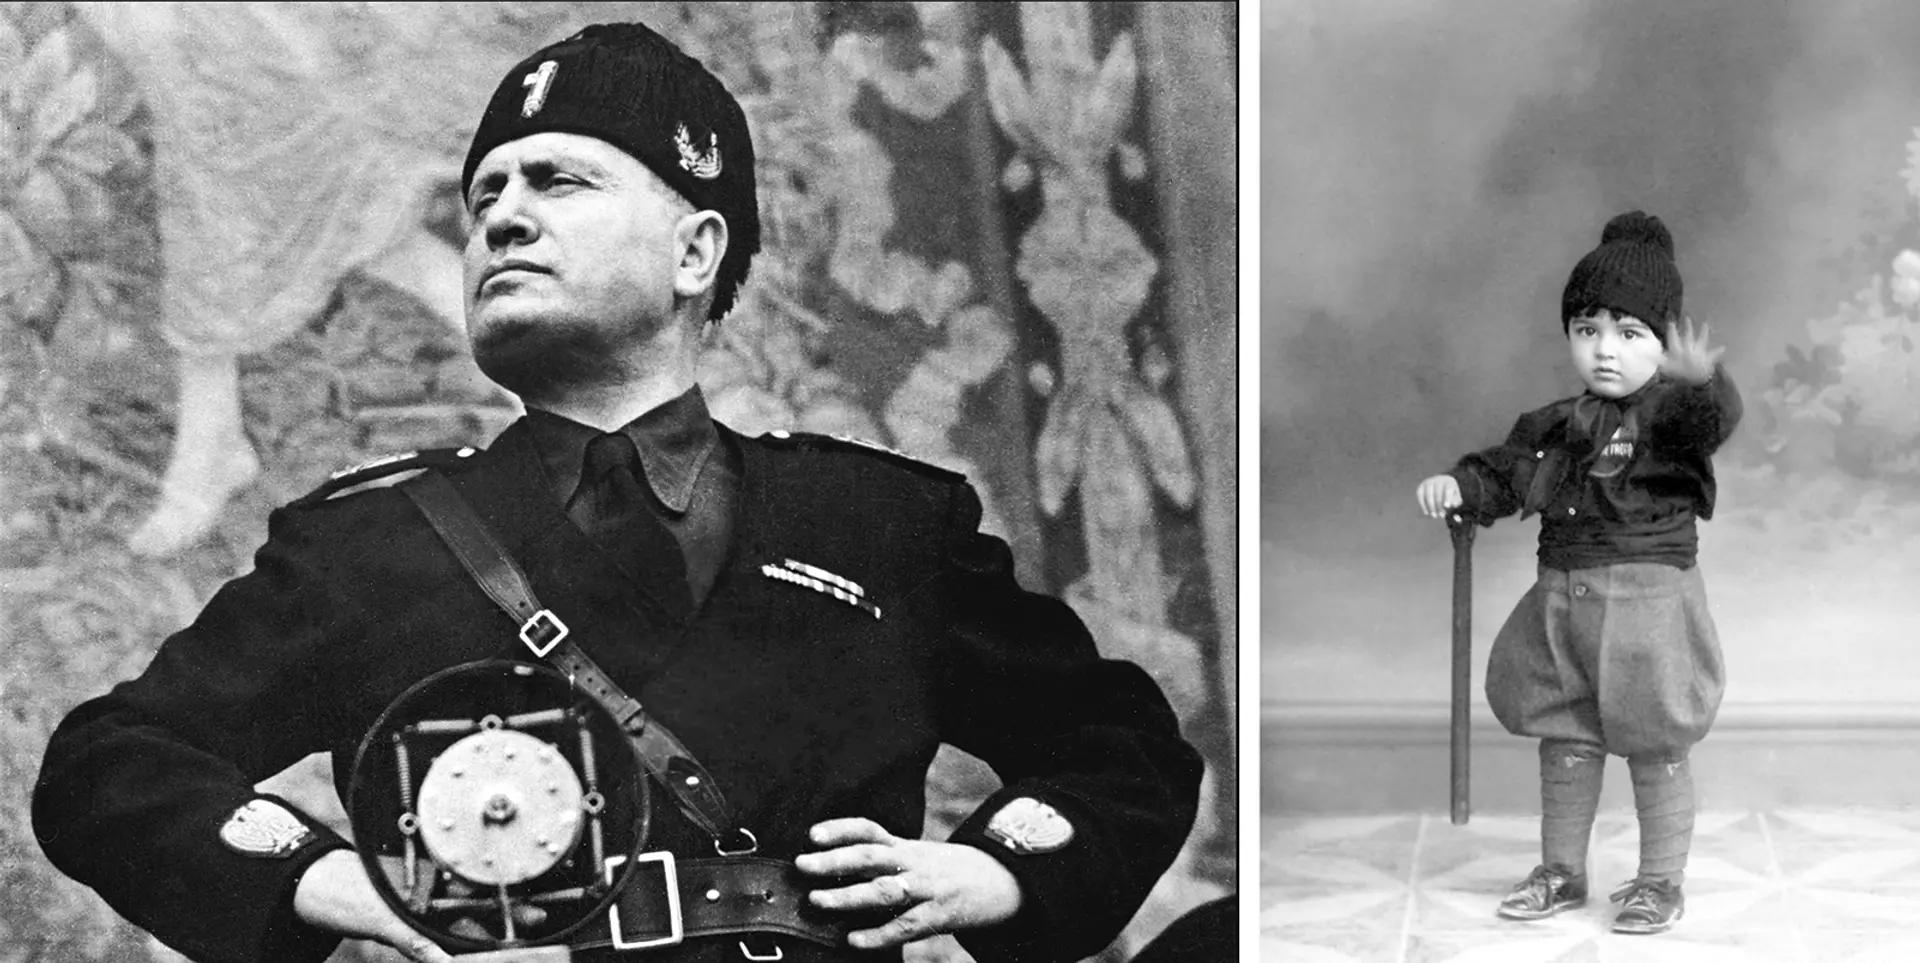 Benito Mussolini (à gauche) a dirigé l'Italie de 1922 à 1943 en tant que chef du parti national fasciste avant d'être assassiné en 1945. Le musée comprendra des photographies et des souvenirs de l'époque fasciste, comme la photo (à droite) d'un garçon vêtu d'un uniforme fasciste.
Photo : Shawshots/Alamy Stock Photo ; Enfant : Centro Studi Rsi